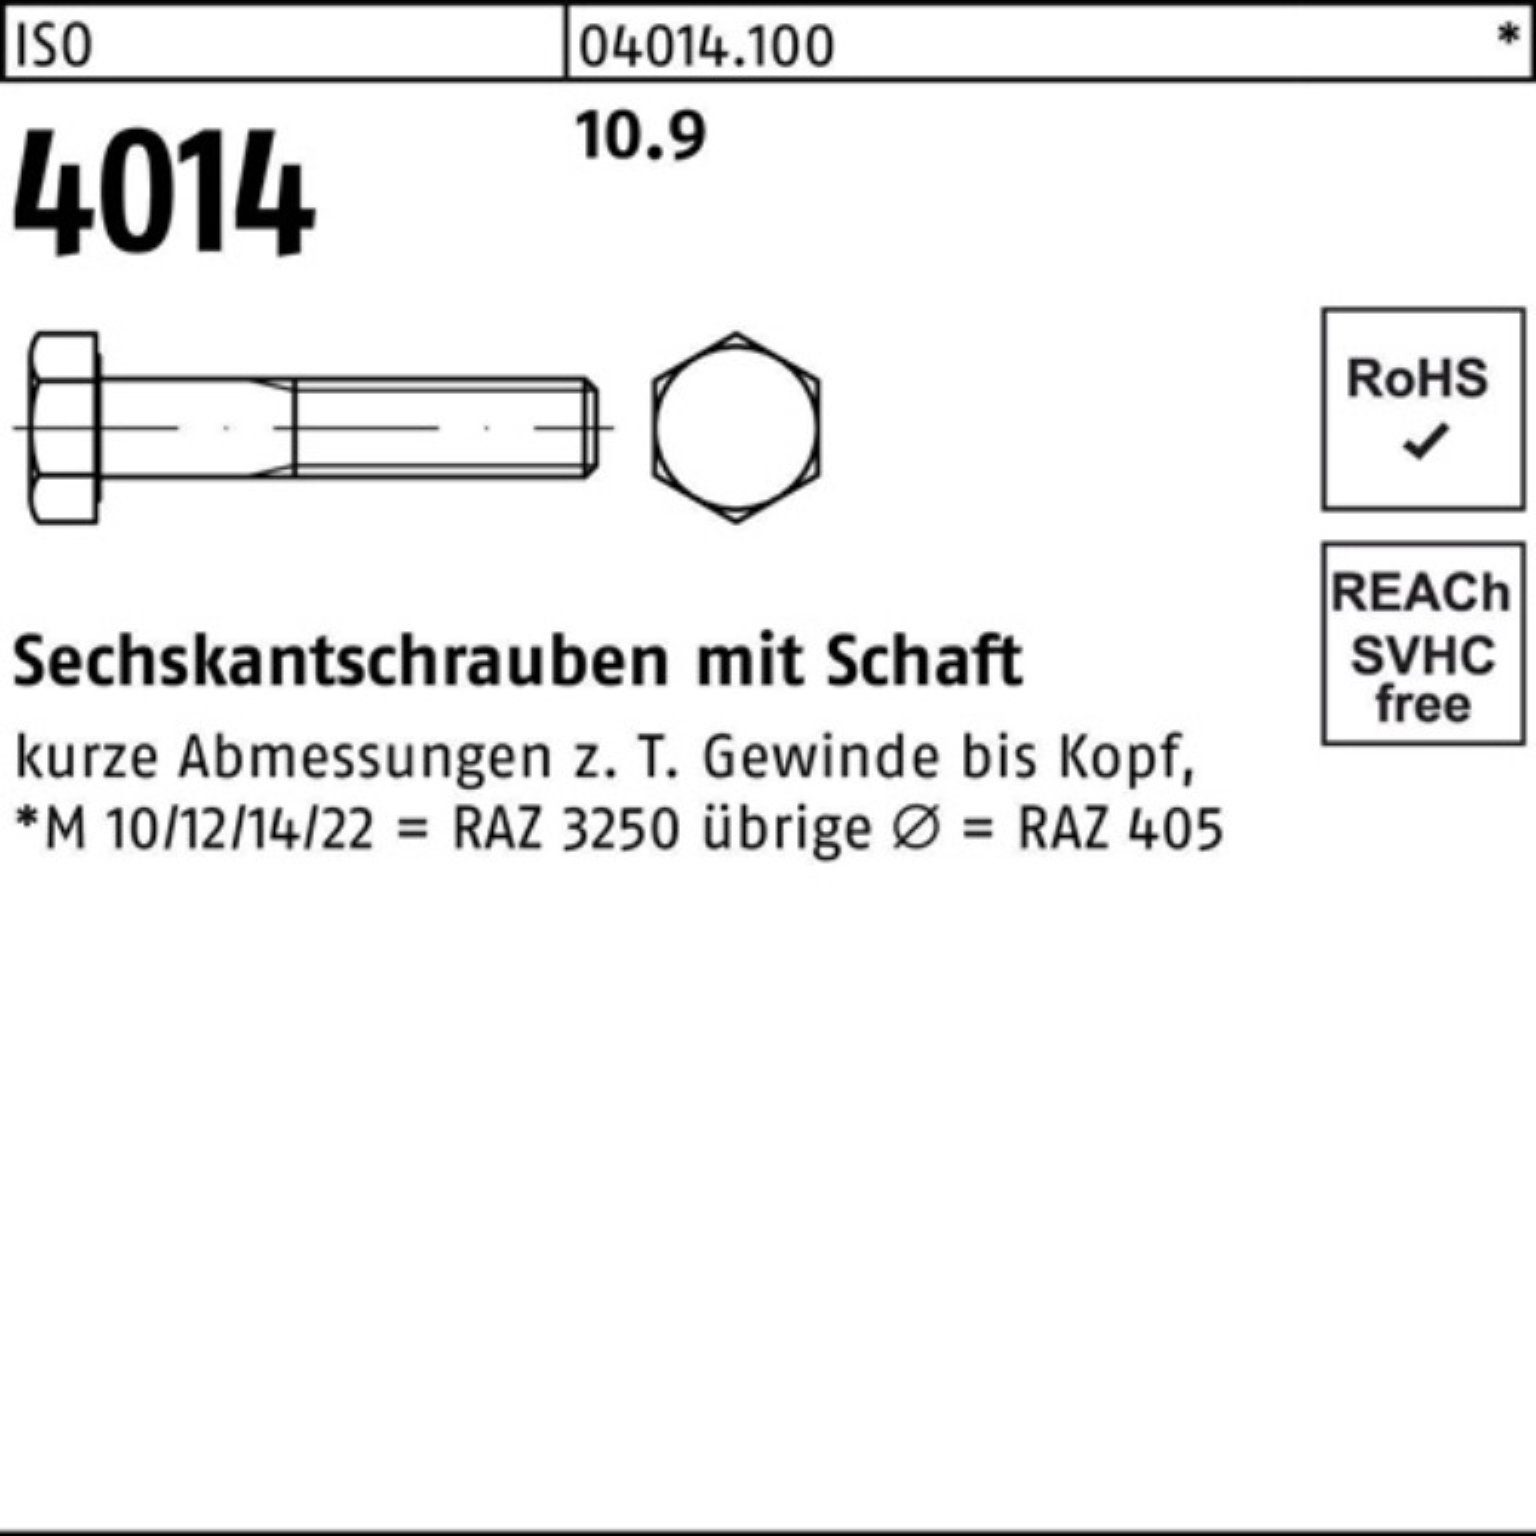 ISO Sechskantschraube 4014 M12x Stück 10.9 Bufab 50 Schaft 100er IS Sechskantschraube 80 Pack